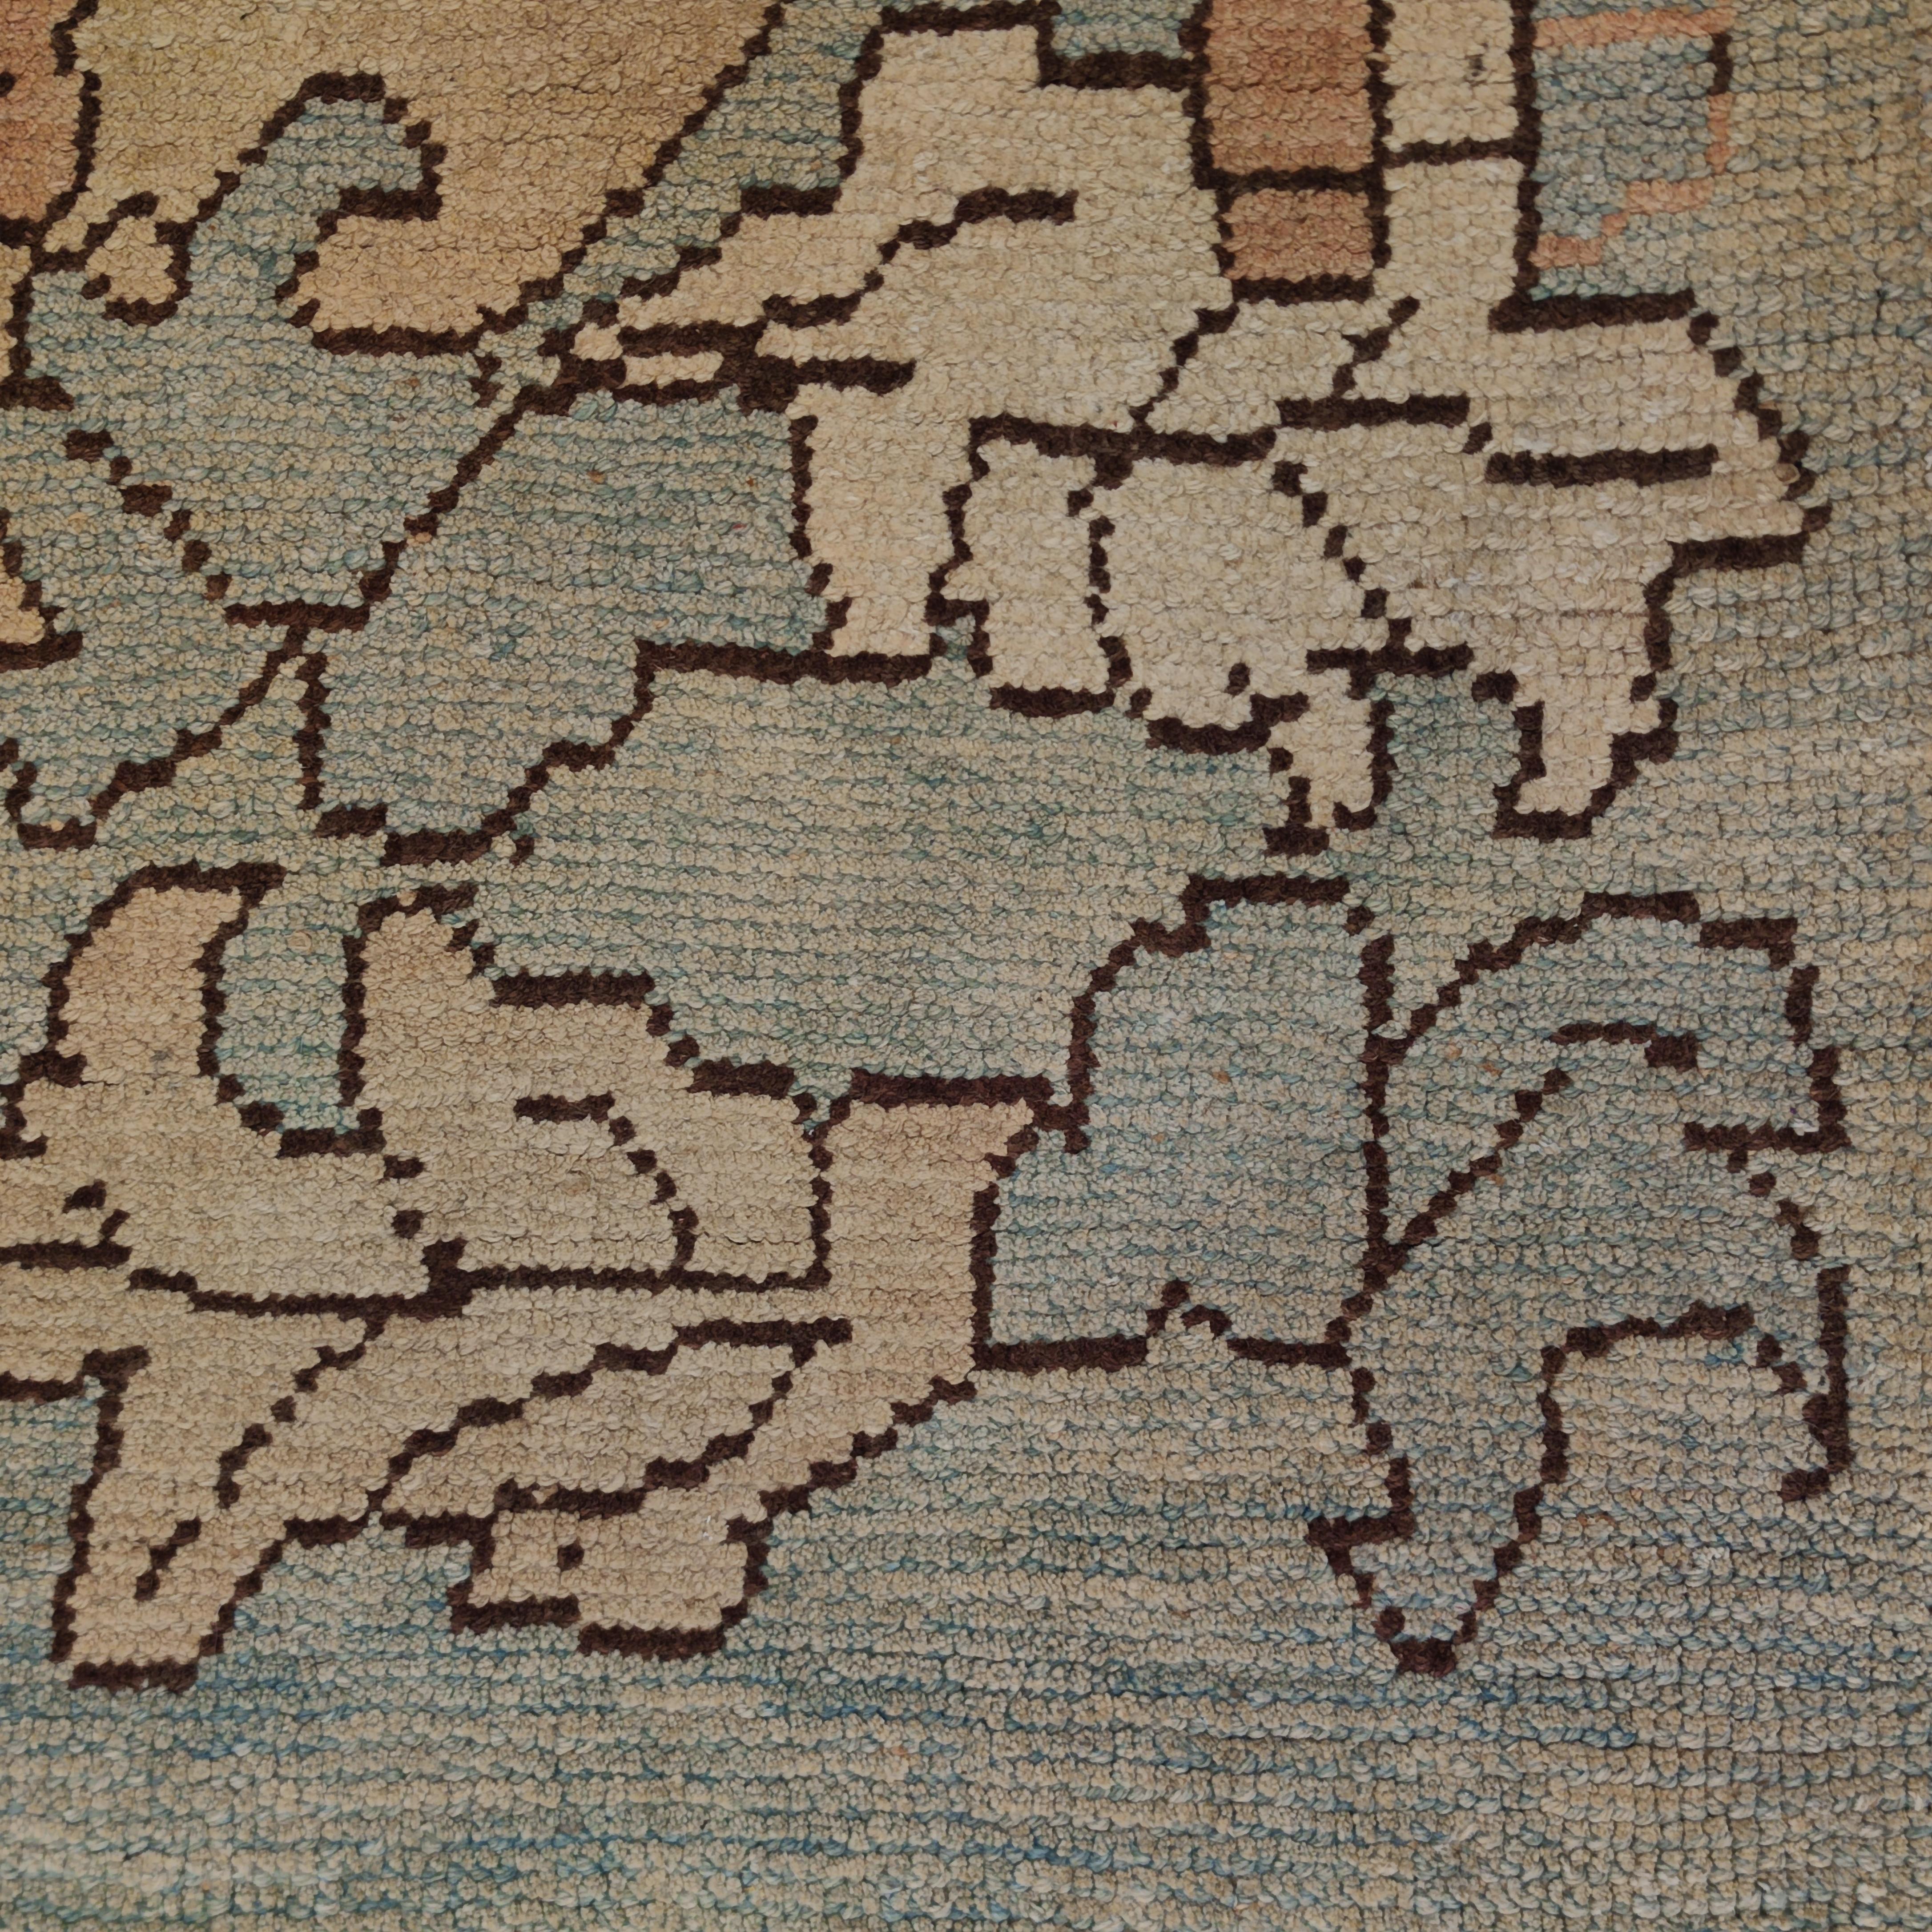 Ce tapis Oushak très raffiné se distingue par un magnifique fond bleu aqua, embelli par un motif surdimensionné composé d'une grande palmette centrale flanquée d'un réseau de feuilles finement dessinées. Les motifs de ce type découlent de la riche